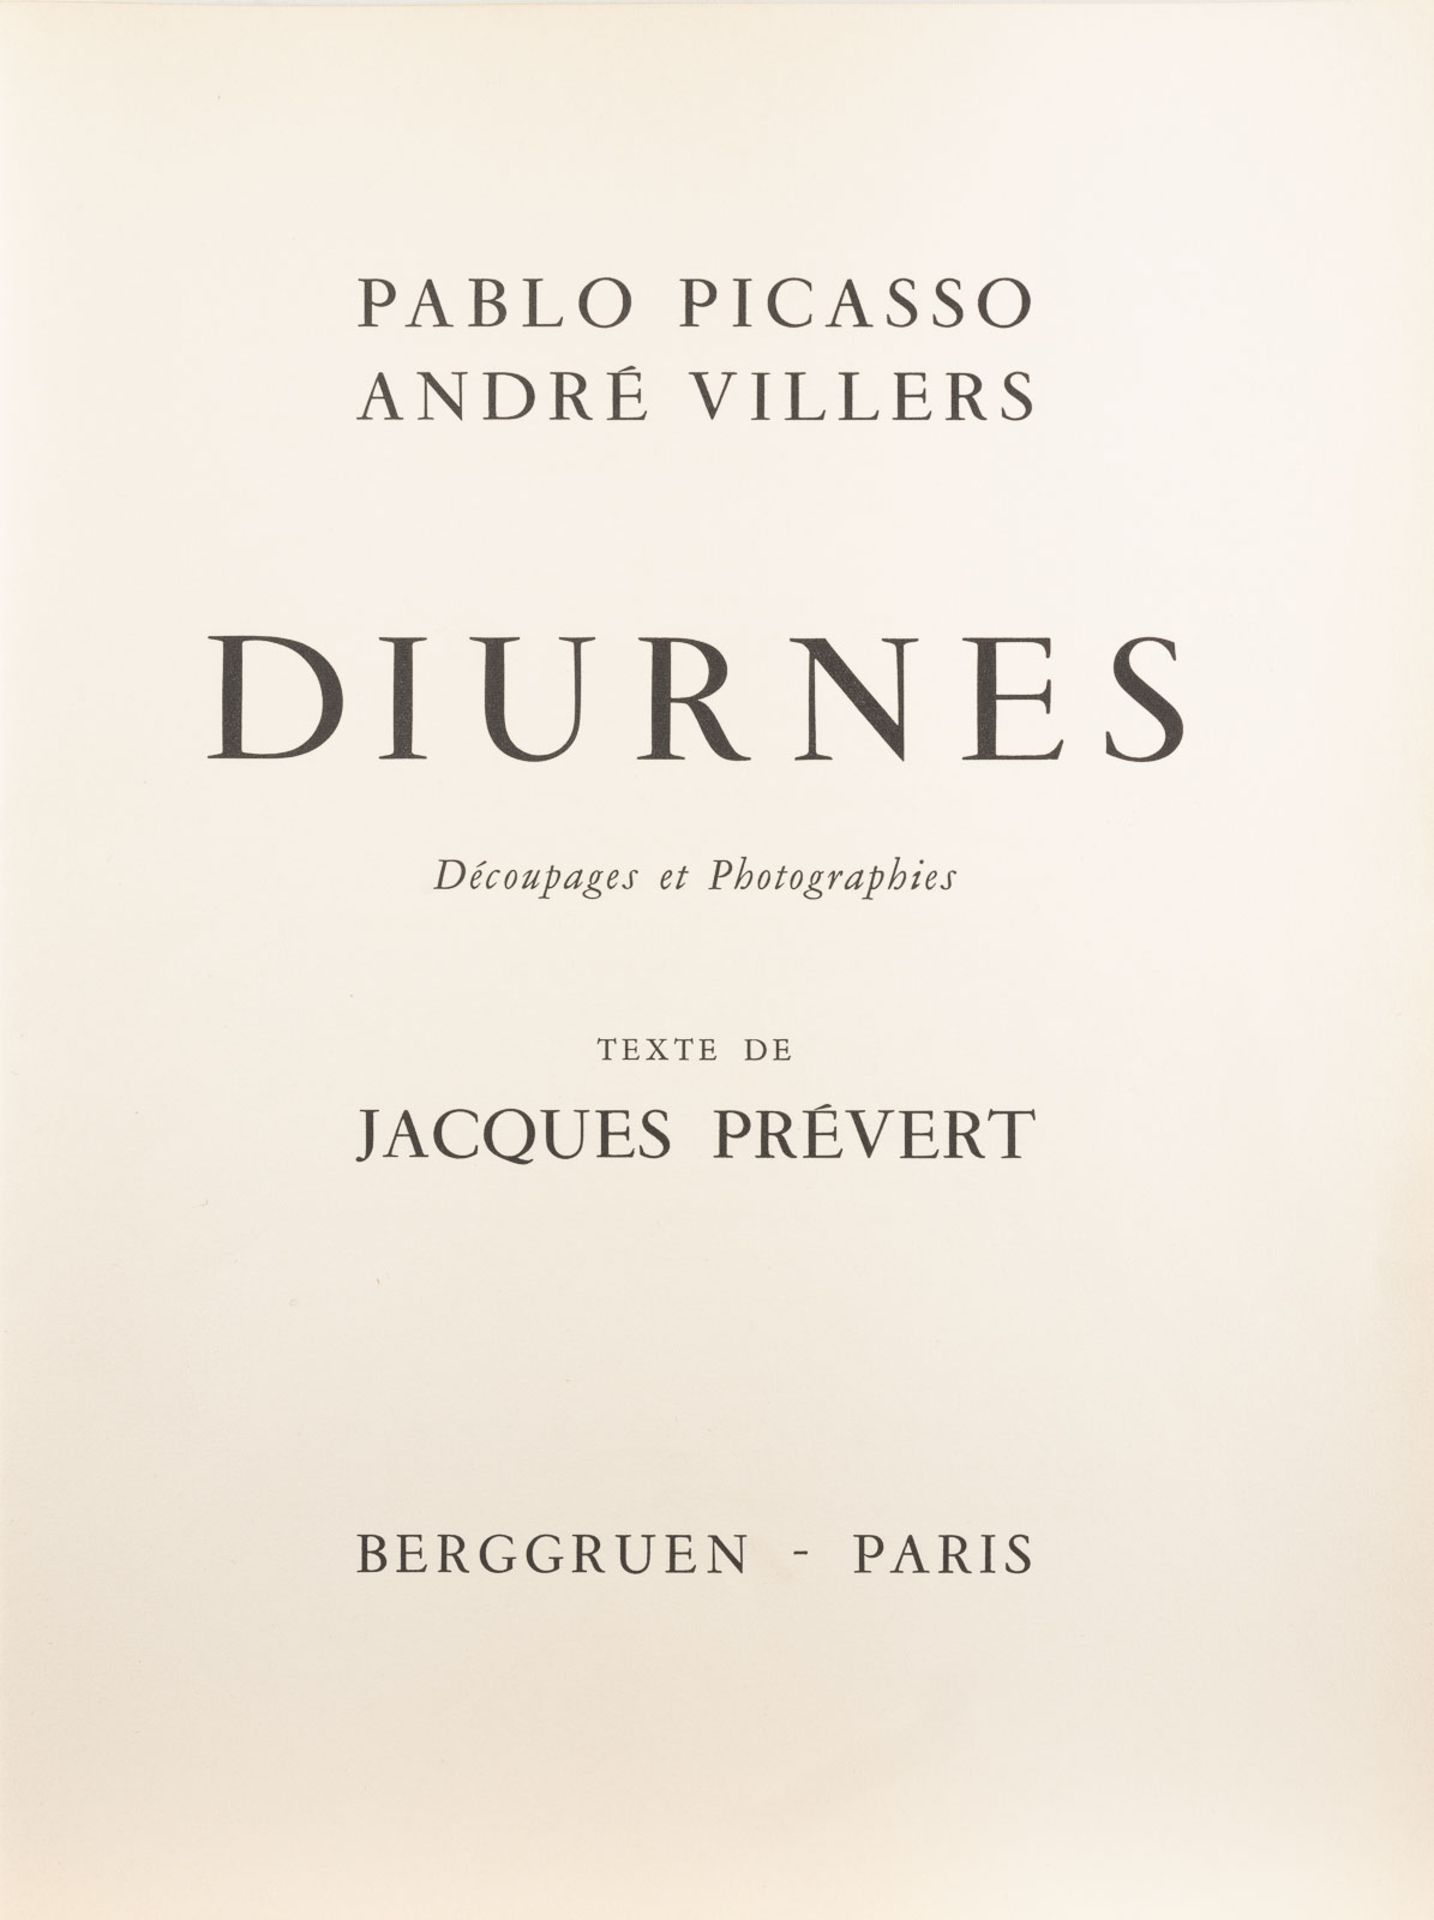 PABLO PICASSO MAPPENWERK 'DIURNES. DECOUPAGES ET PHOTOGRAPHIES' (1962) - Bild 2 aus 5